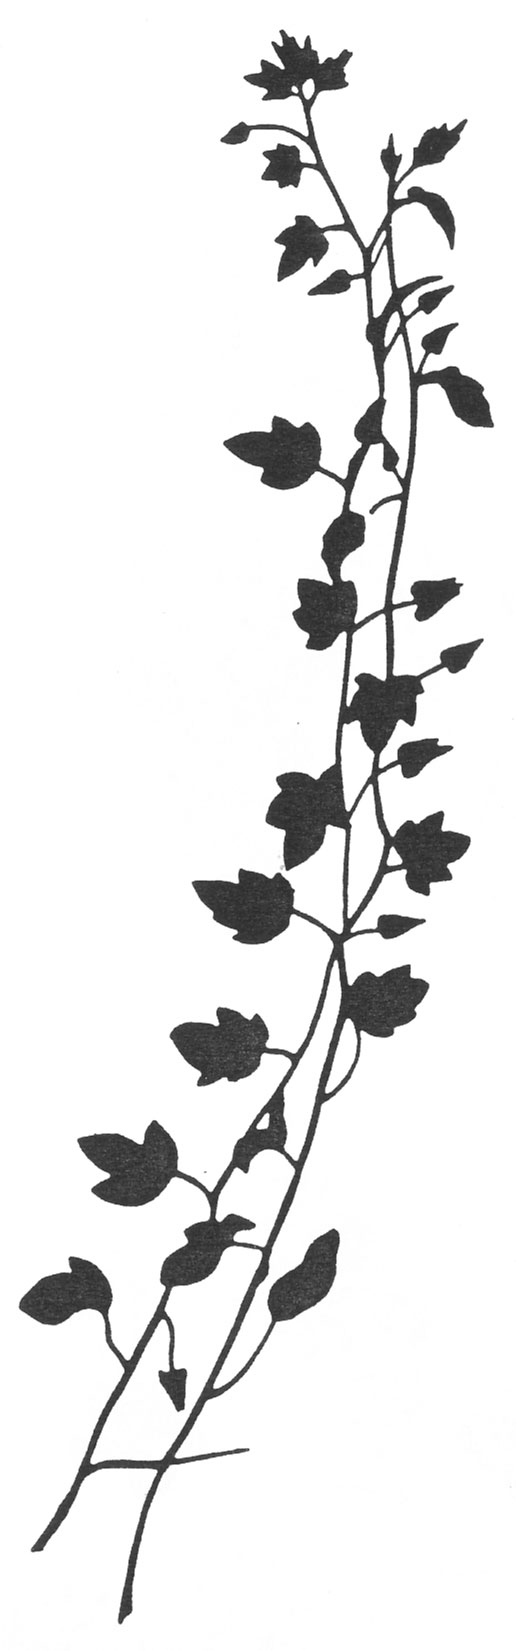 葉っぱの見本画像-白黒・枝葉・細長